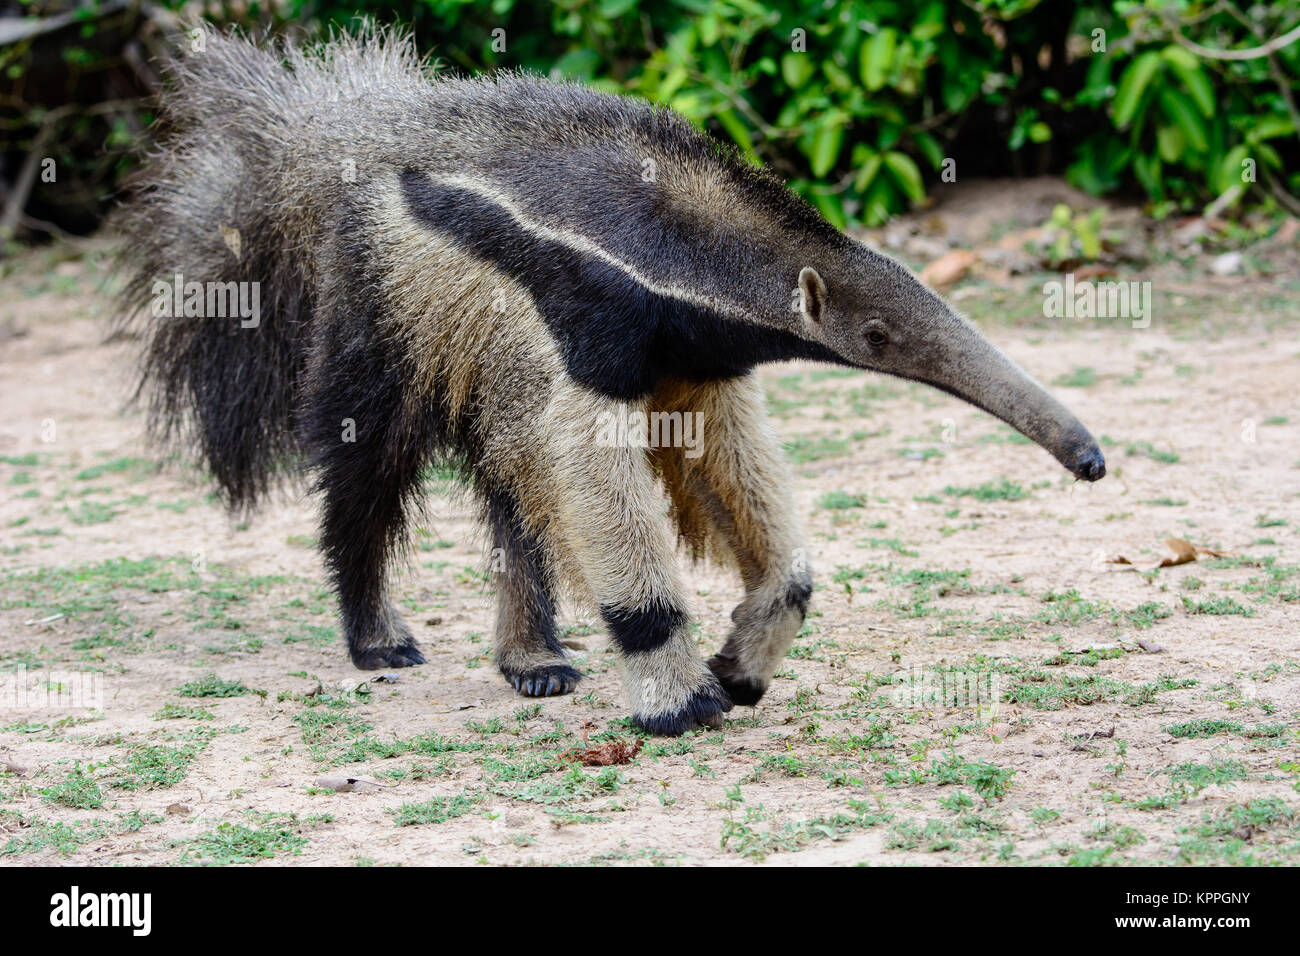 Giant anteater anfahren Stockfoto